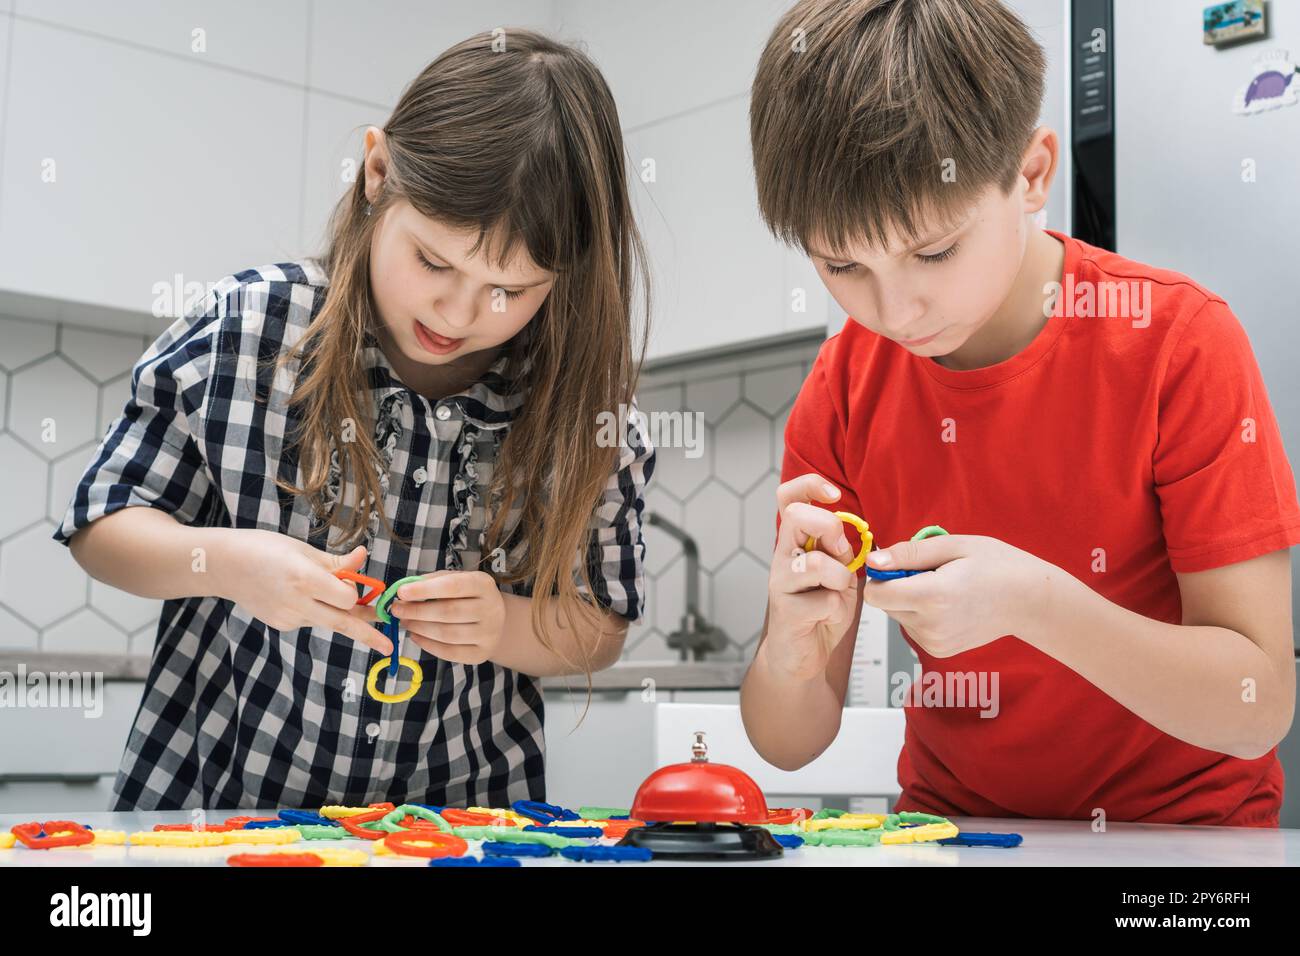 Les enfants jouent jouet constructeur debout au-dessus de la table de cuisine et regardant vers le bas. Garçon et fille collectent les détails colorés de lego. Banque D'Images